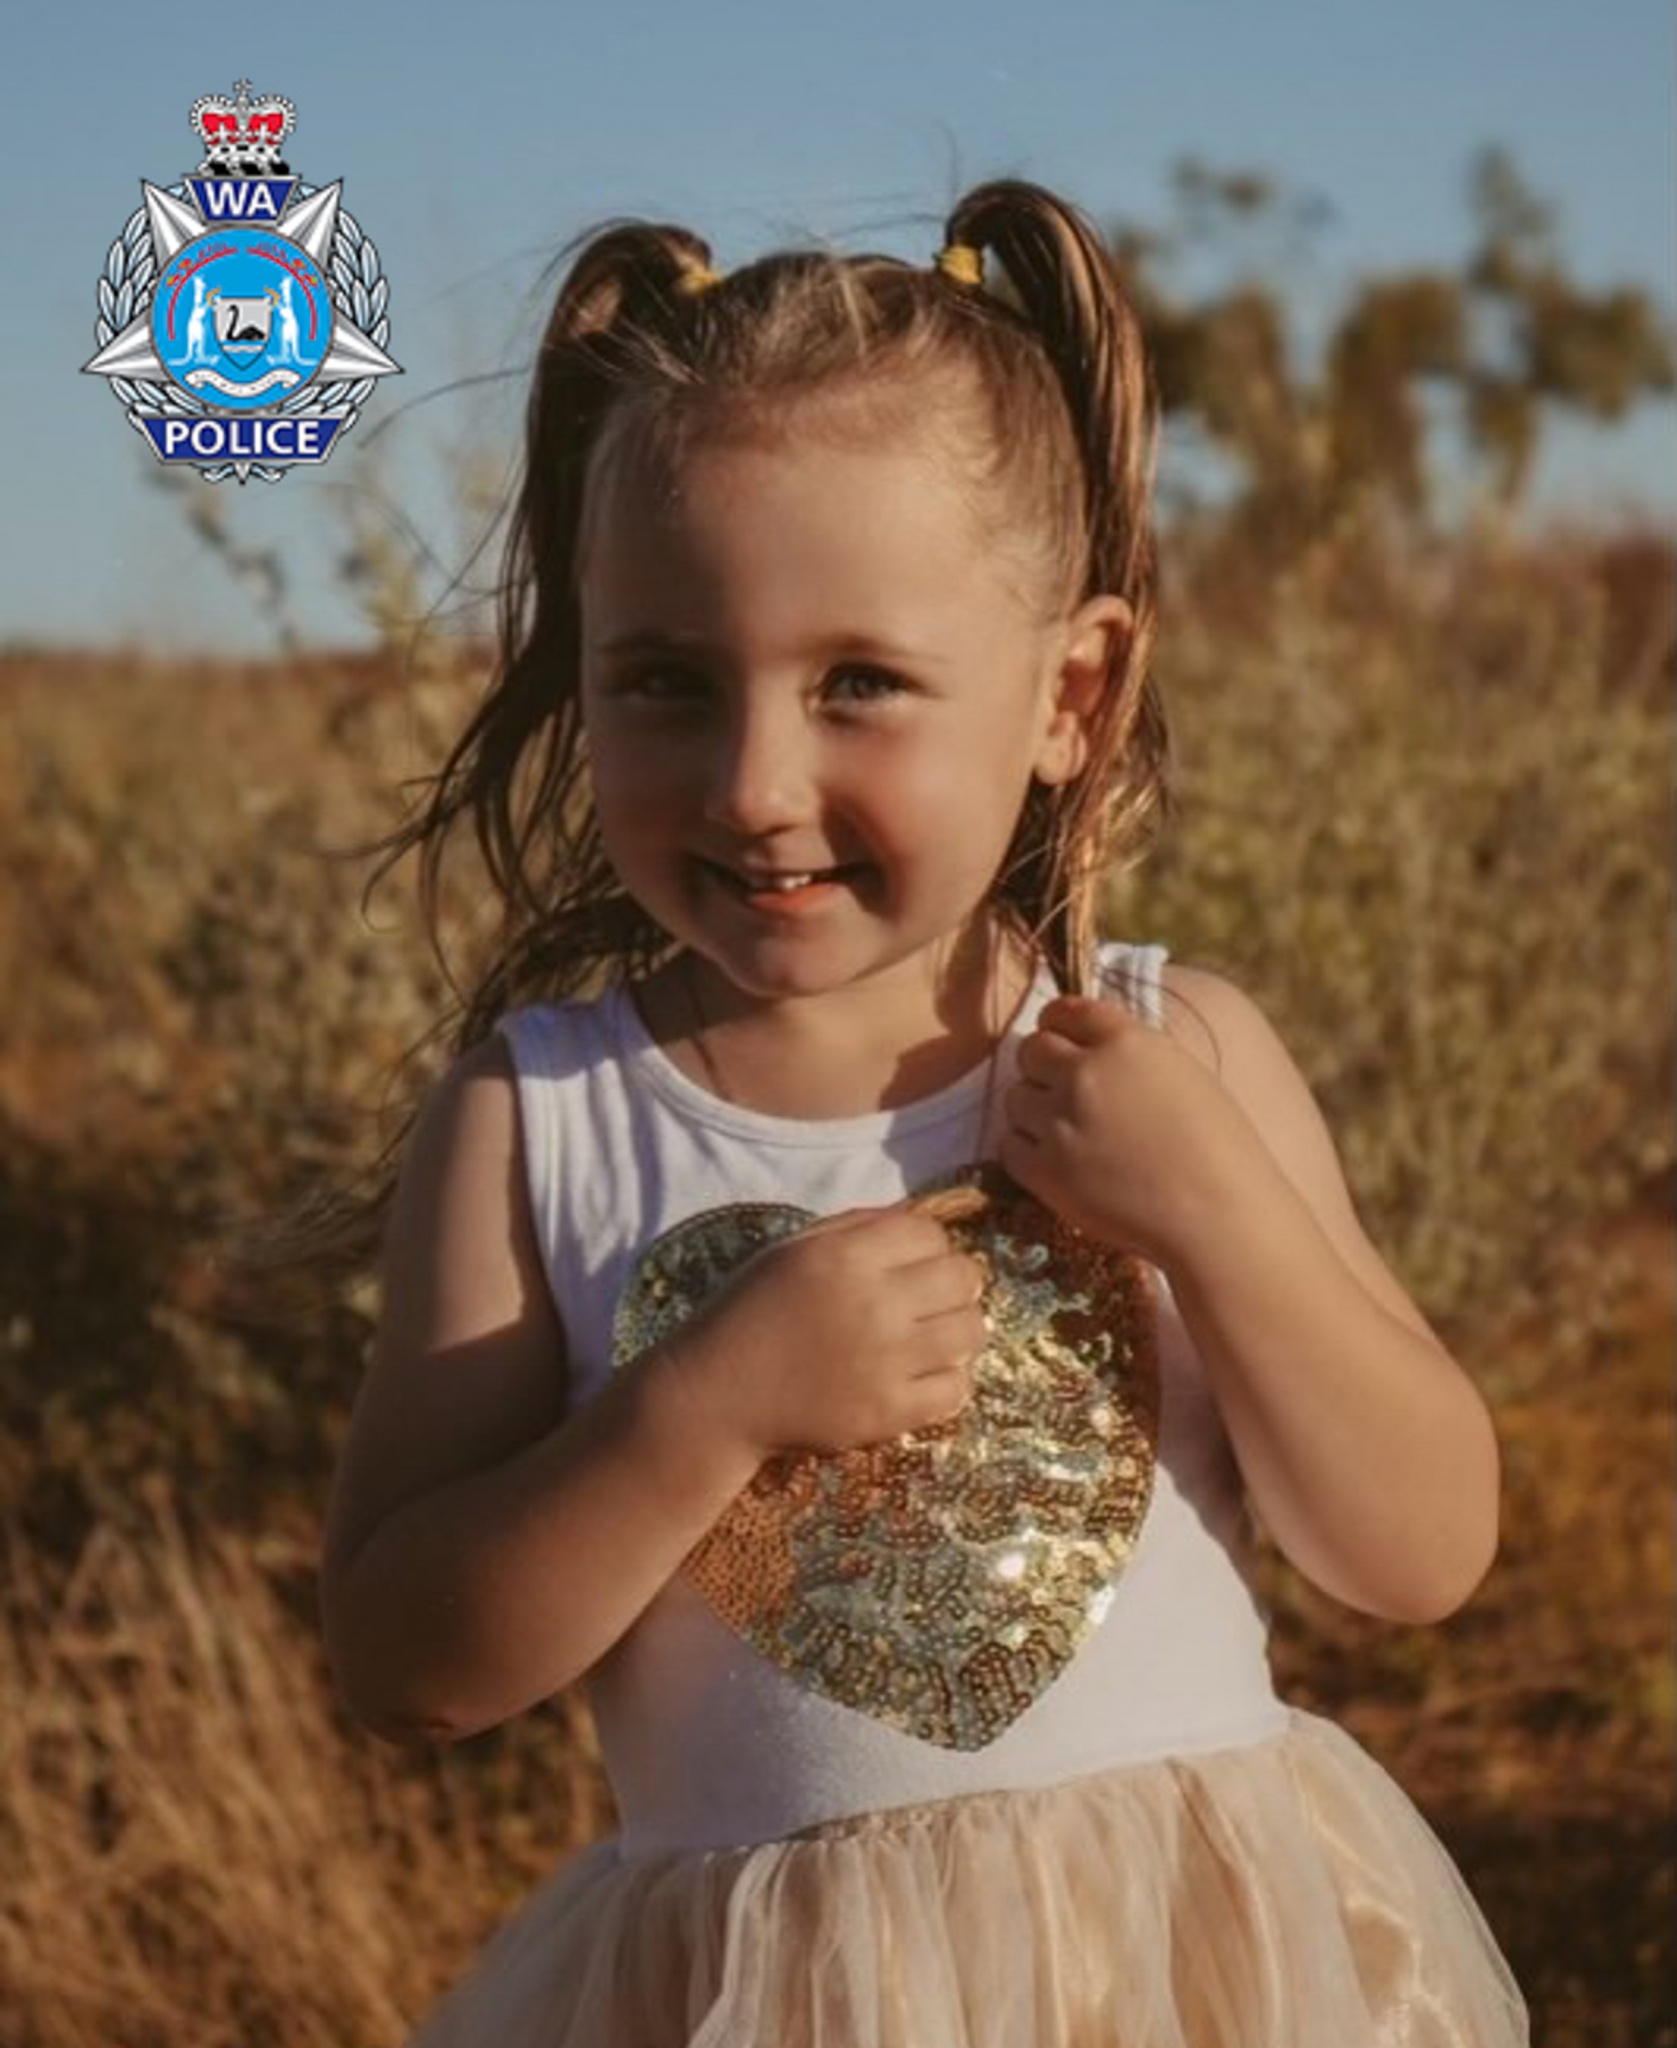 NAGRADA OD MILION DOLARA Australijska policija strahuje da je devojčica (4) oteta, traže bilo koju informaciju (FOTO)